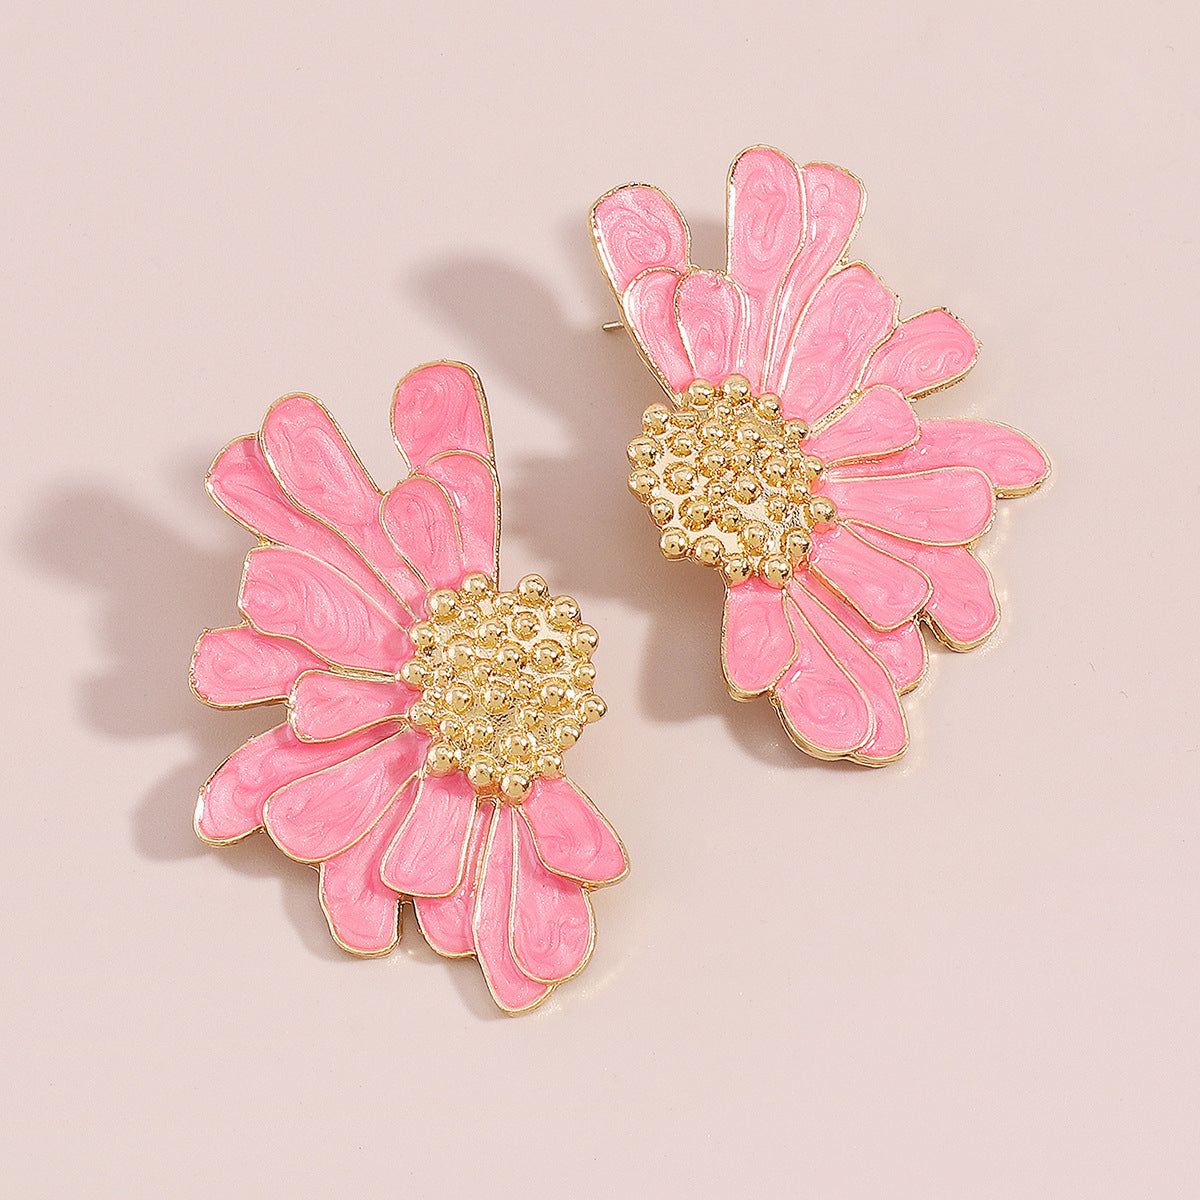 Pink Enamel & 18K Gold-Plated Mum Stud Earrings